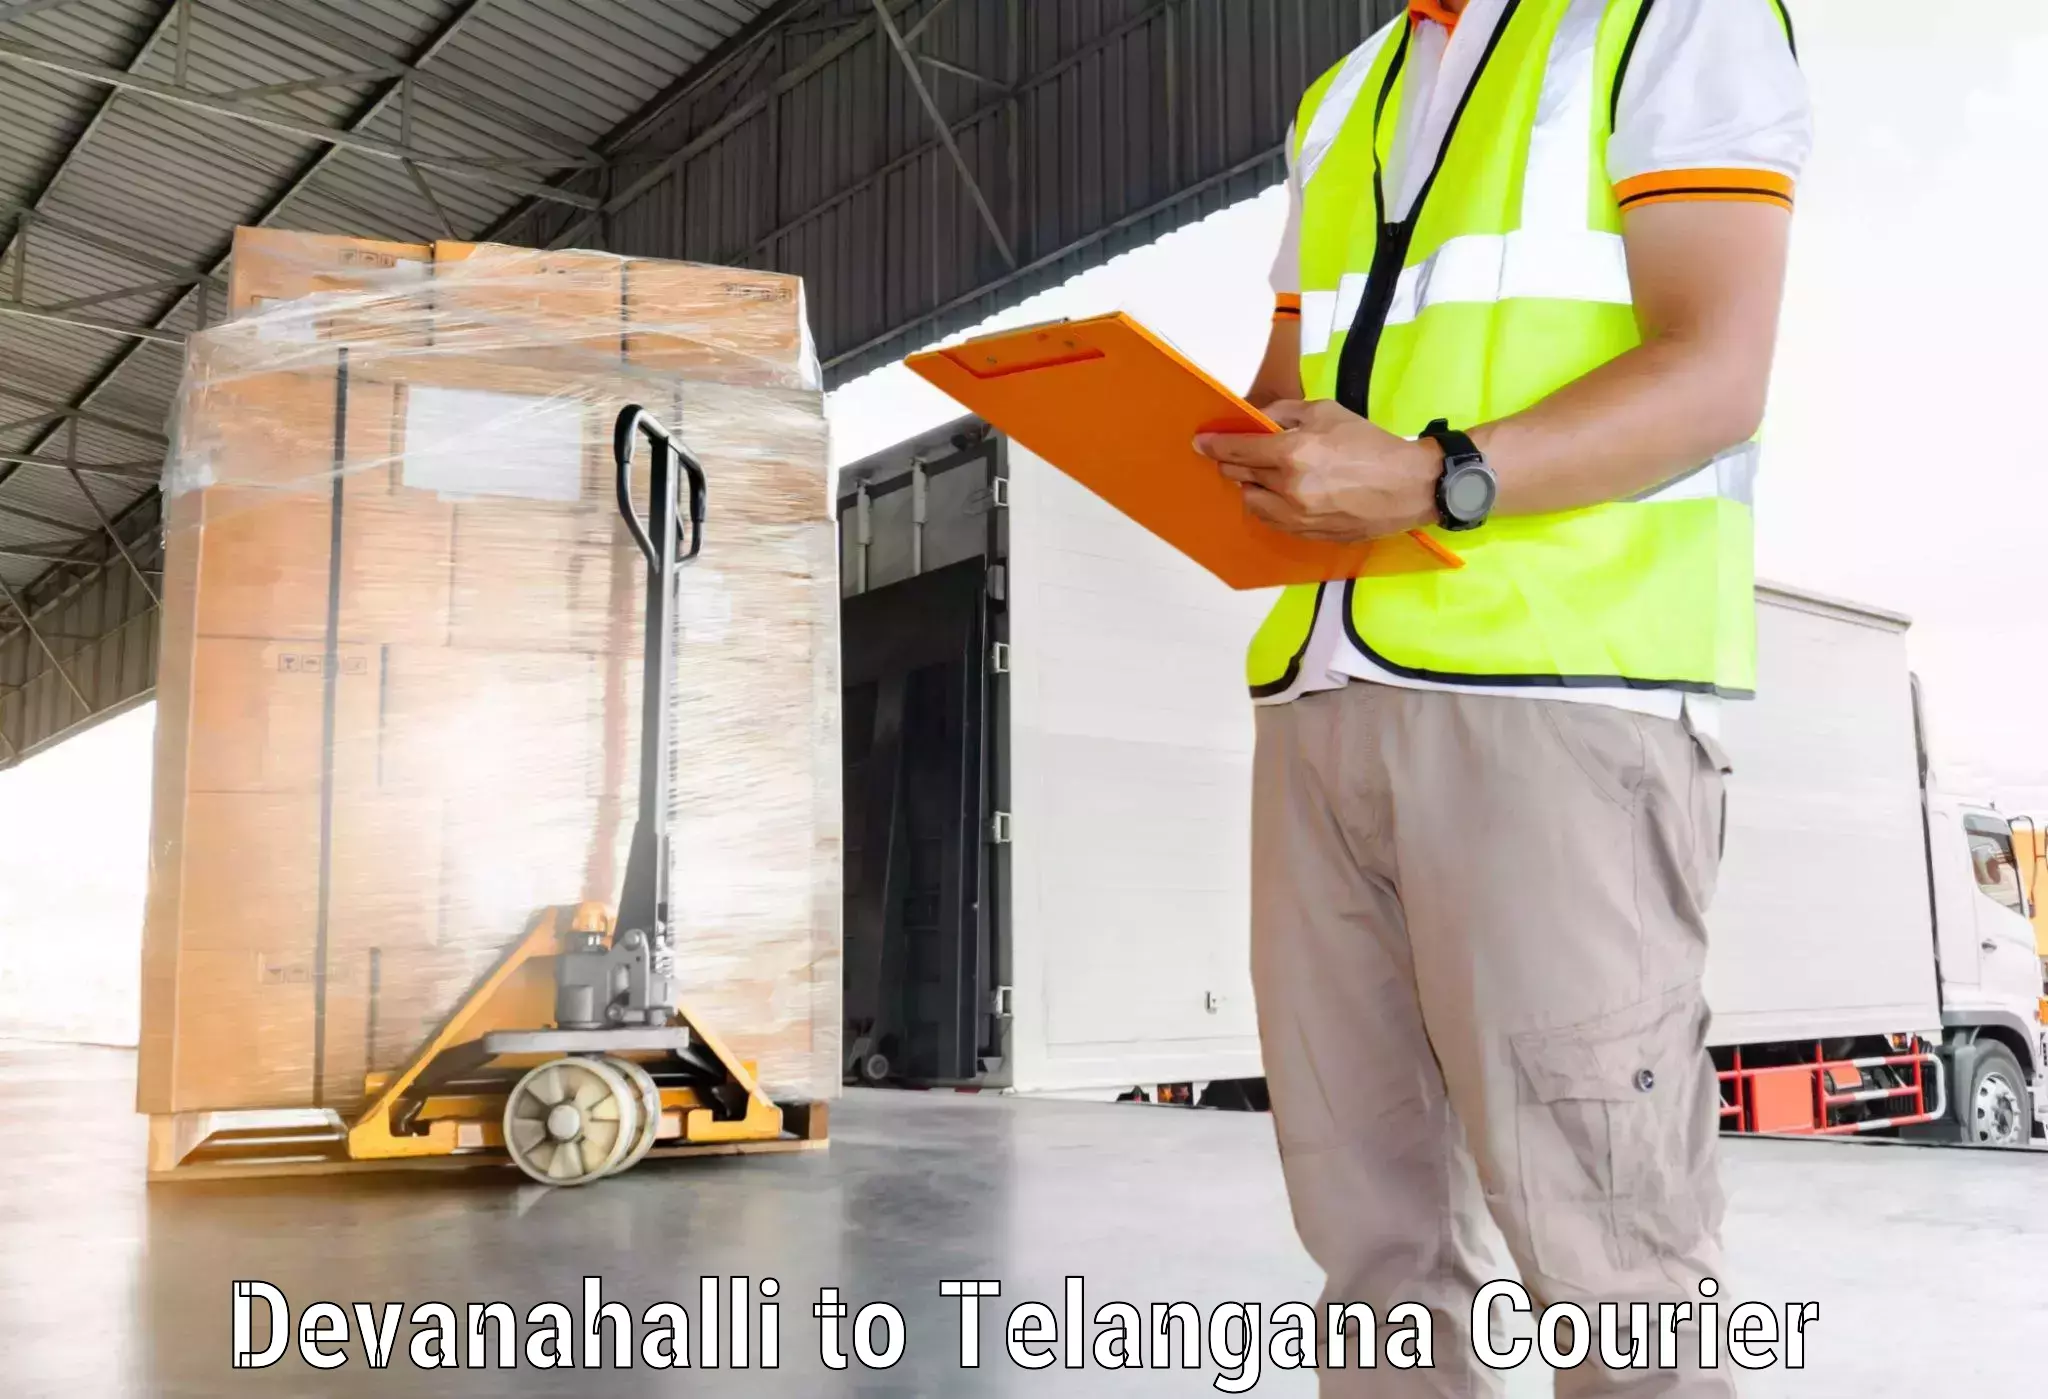 Expedited parcel delivery in Devanahalli to Dharmapuri Jagtial